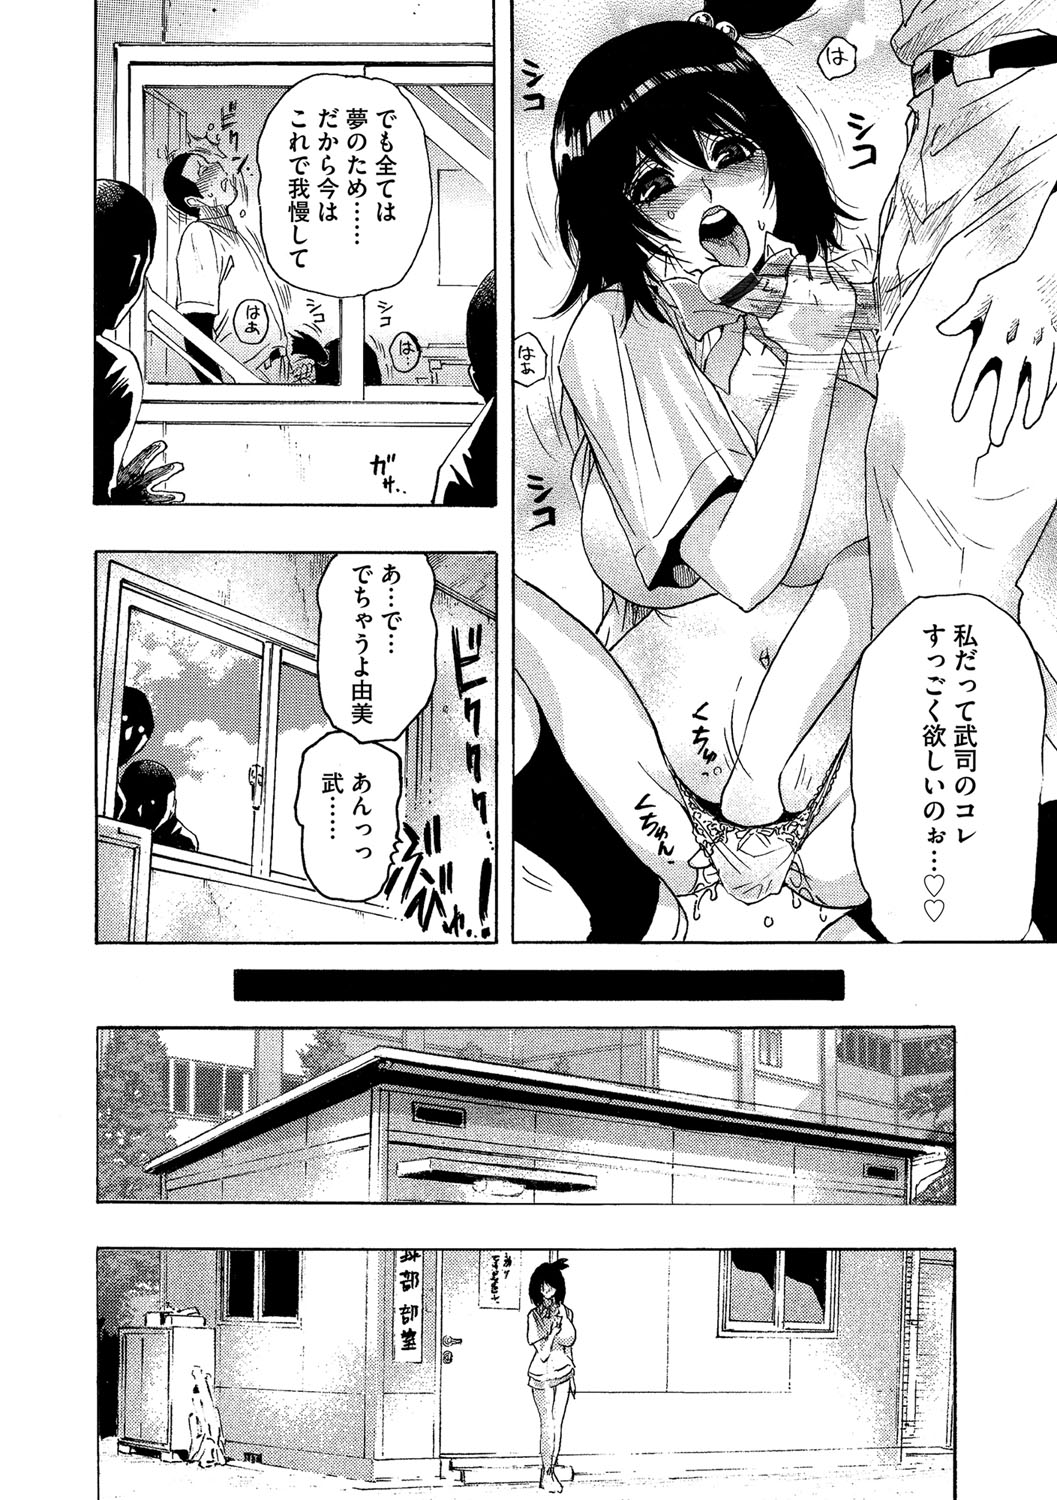 (岡田正尚) ネトラレ甲子園 page 6 full